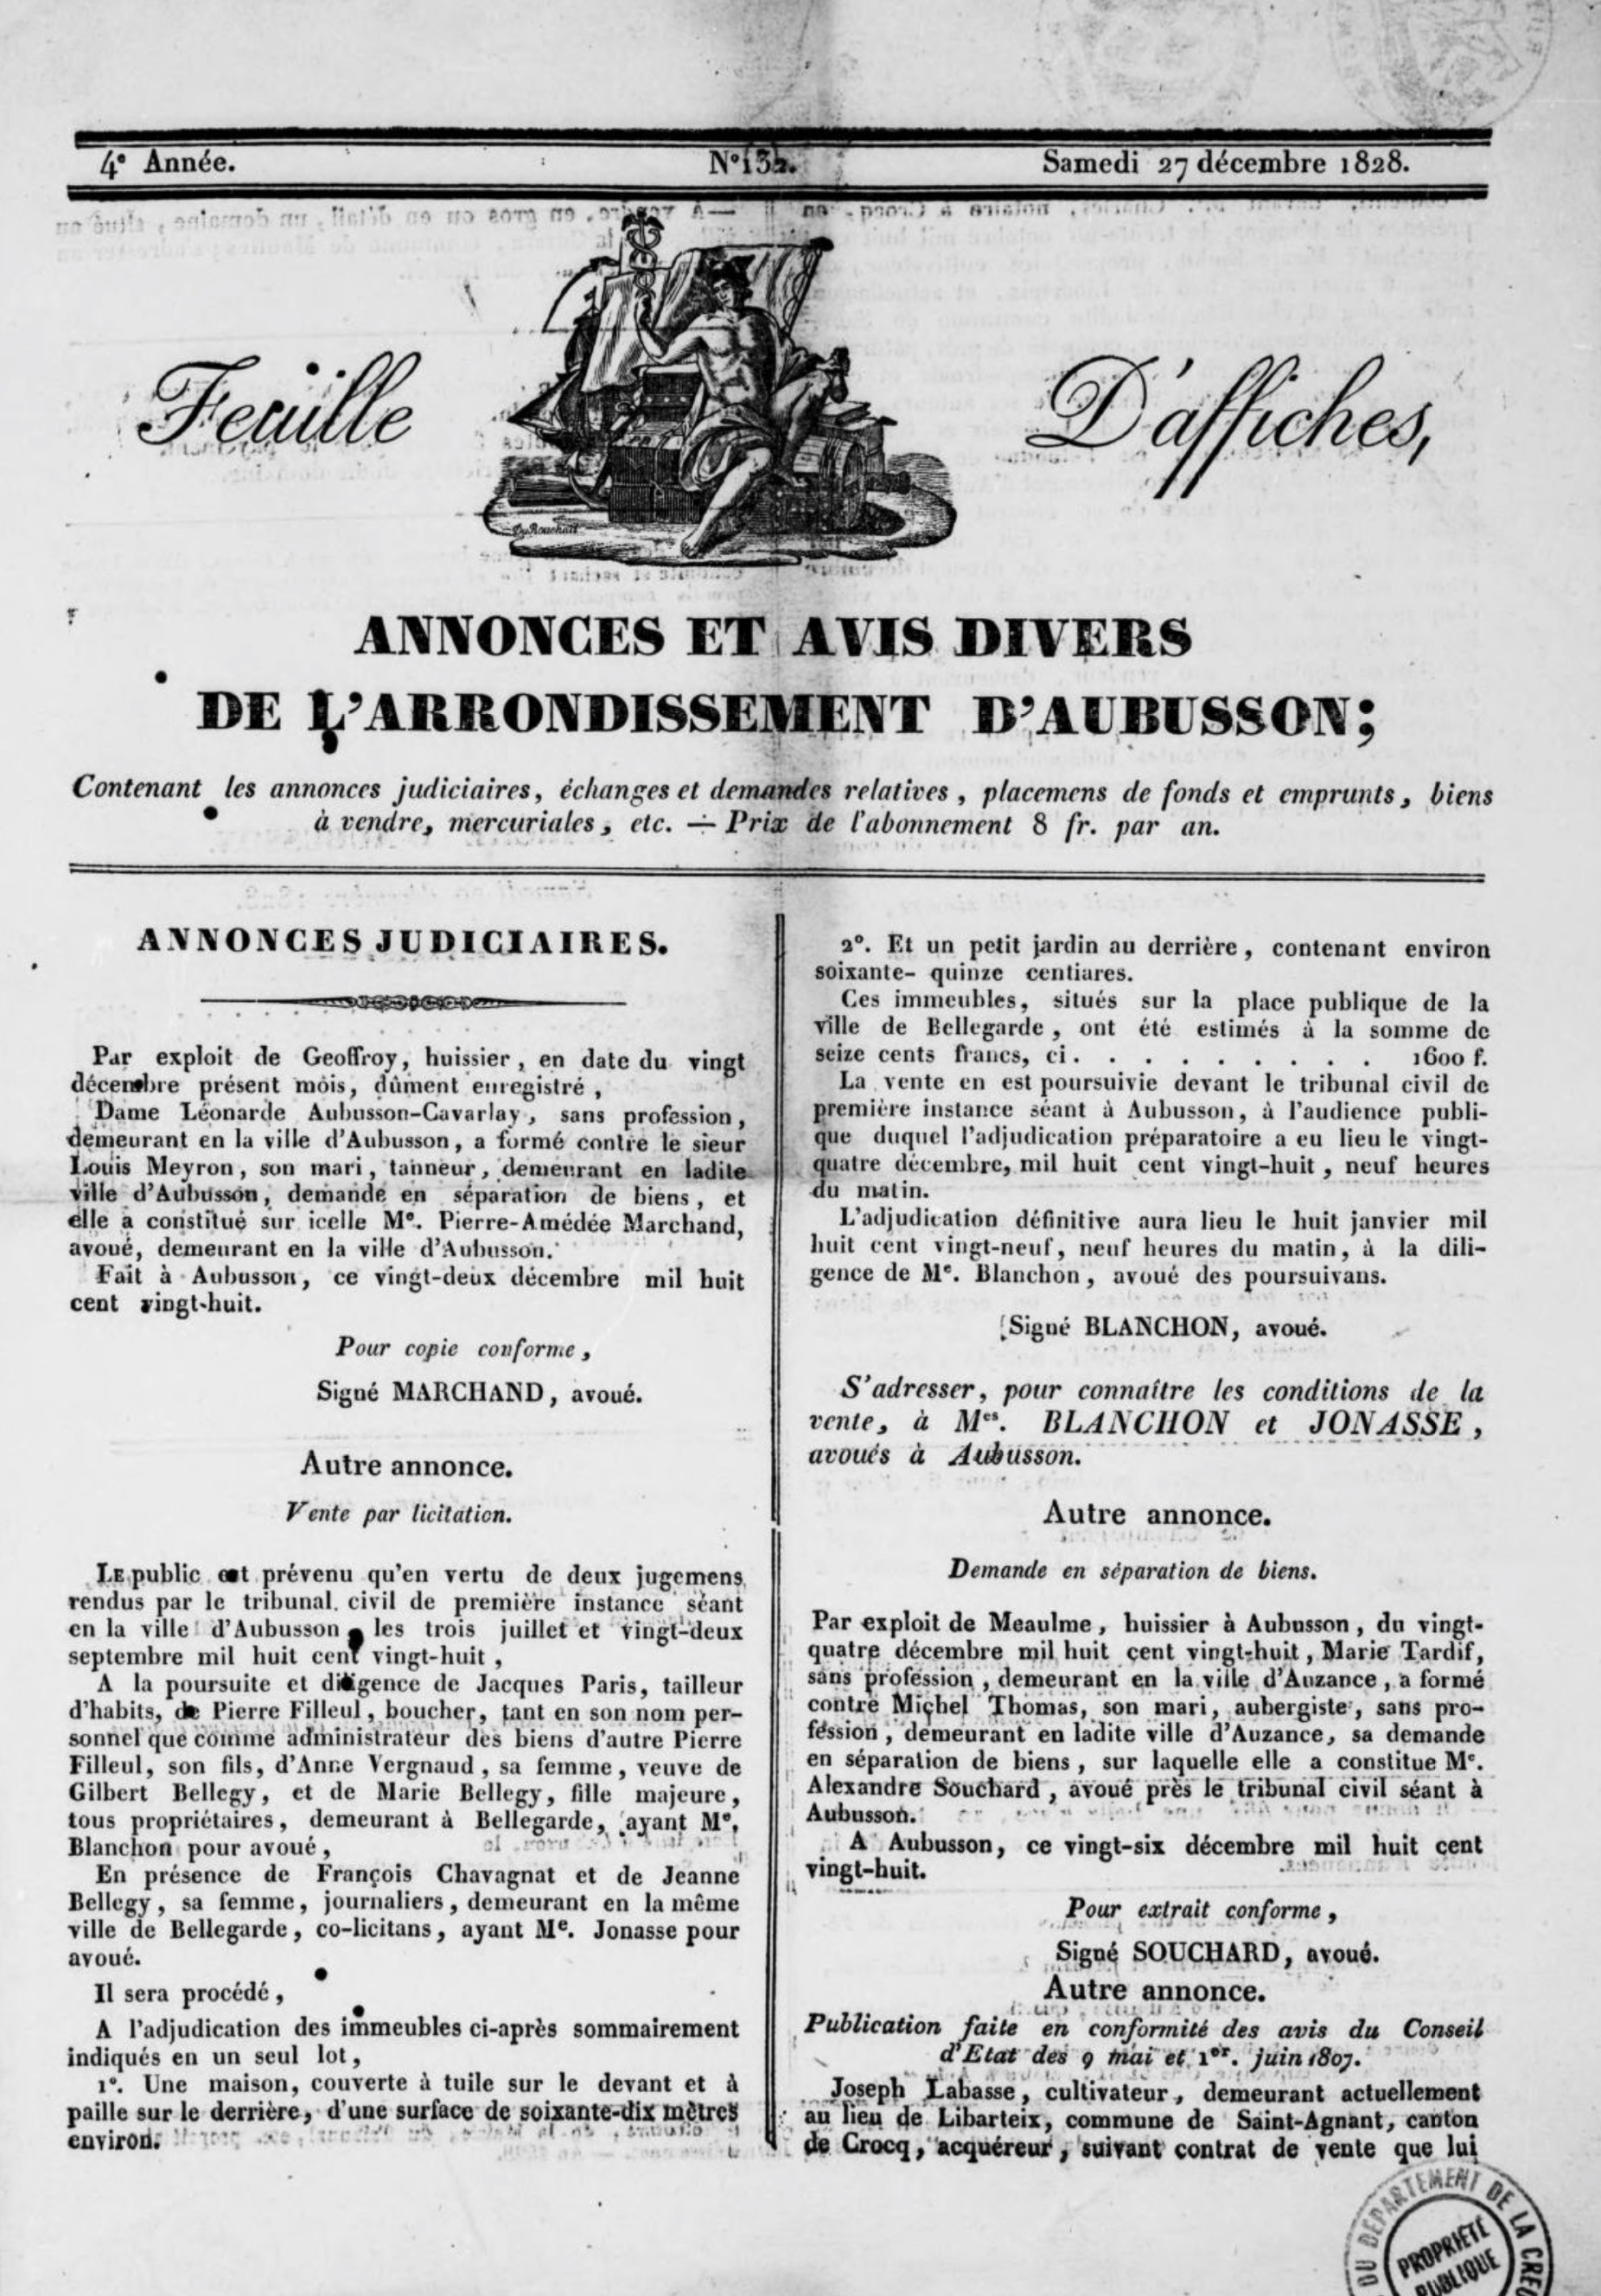 Feuille d’affiches, annonces et avis divers de l’arrondissement d’Aubusson, département de la Creuse (1825-1829)